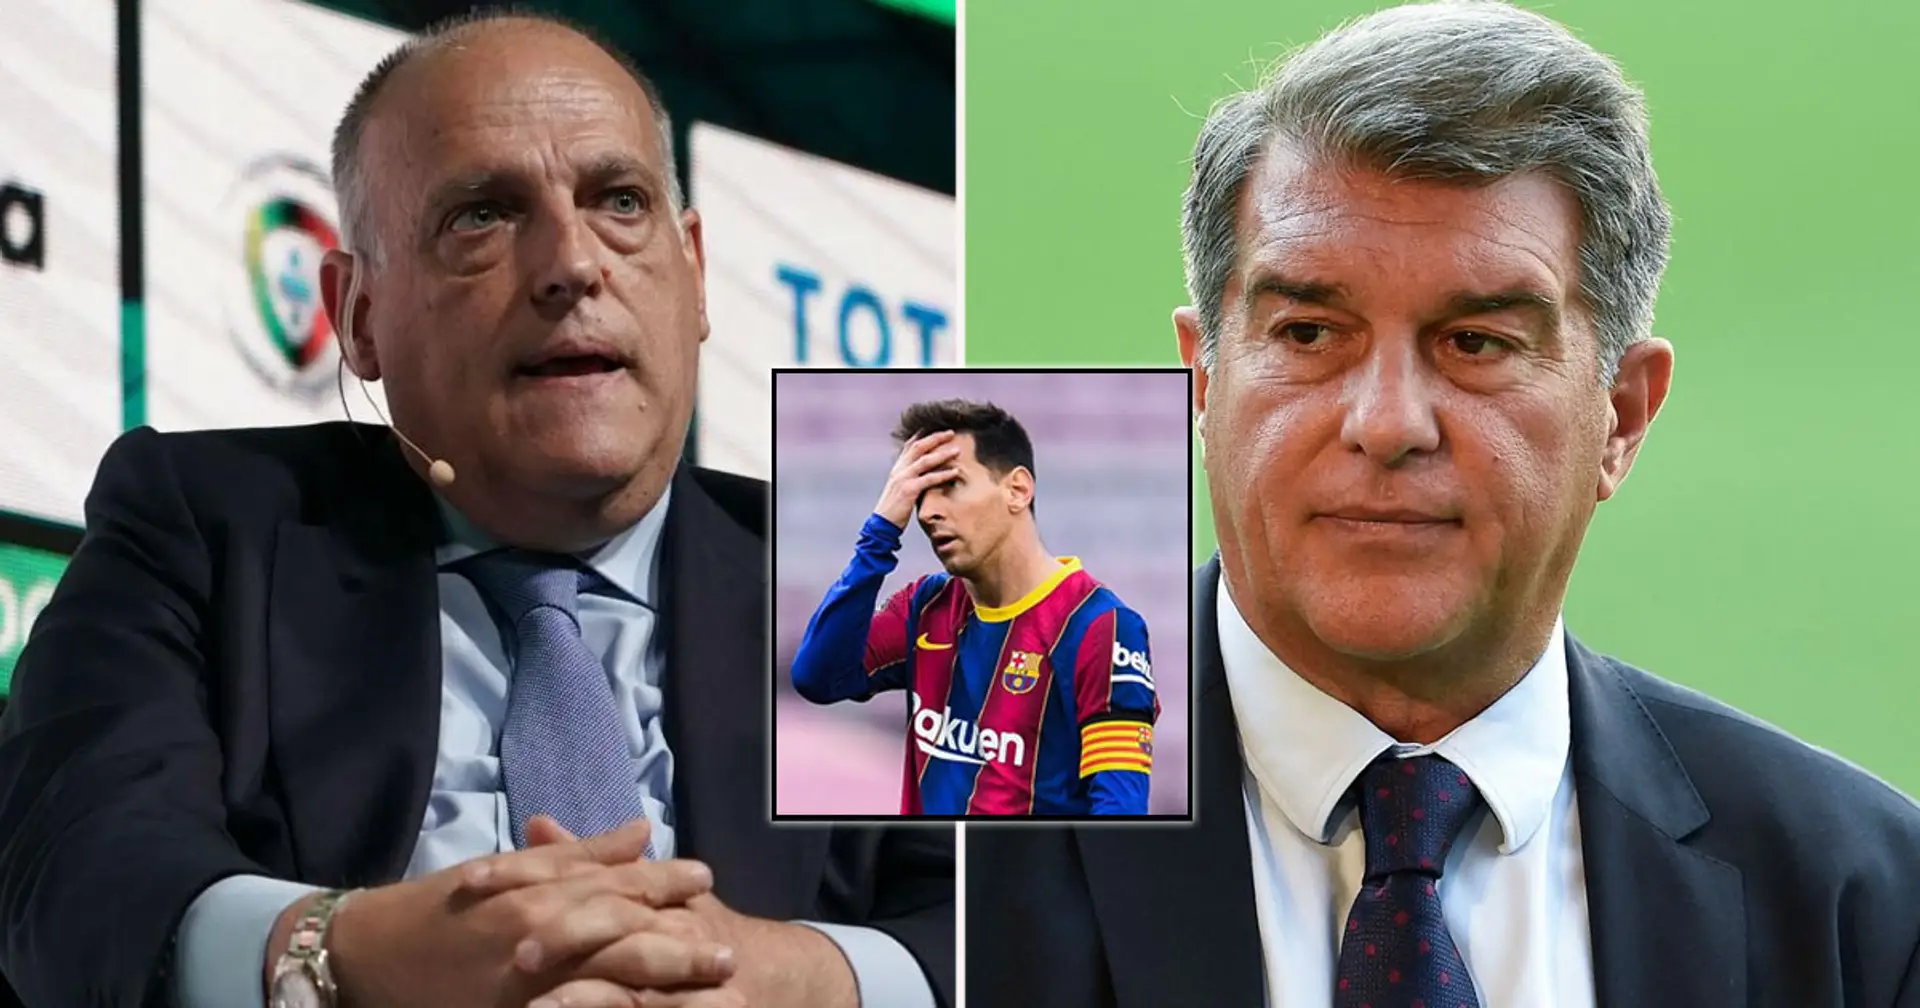 La-Liga-Präsident Tebas kritisiert Laporta: "Er entschied sich, das Super League-Projekt fortzusetzen und Messi gehen zu lassen"